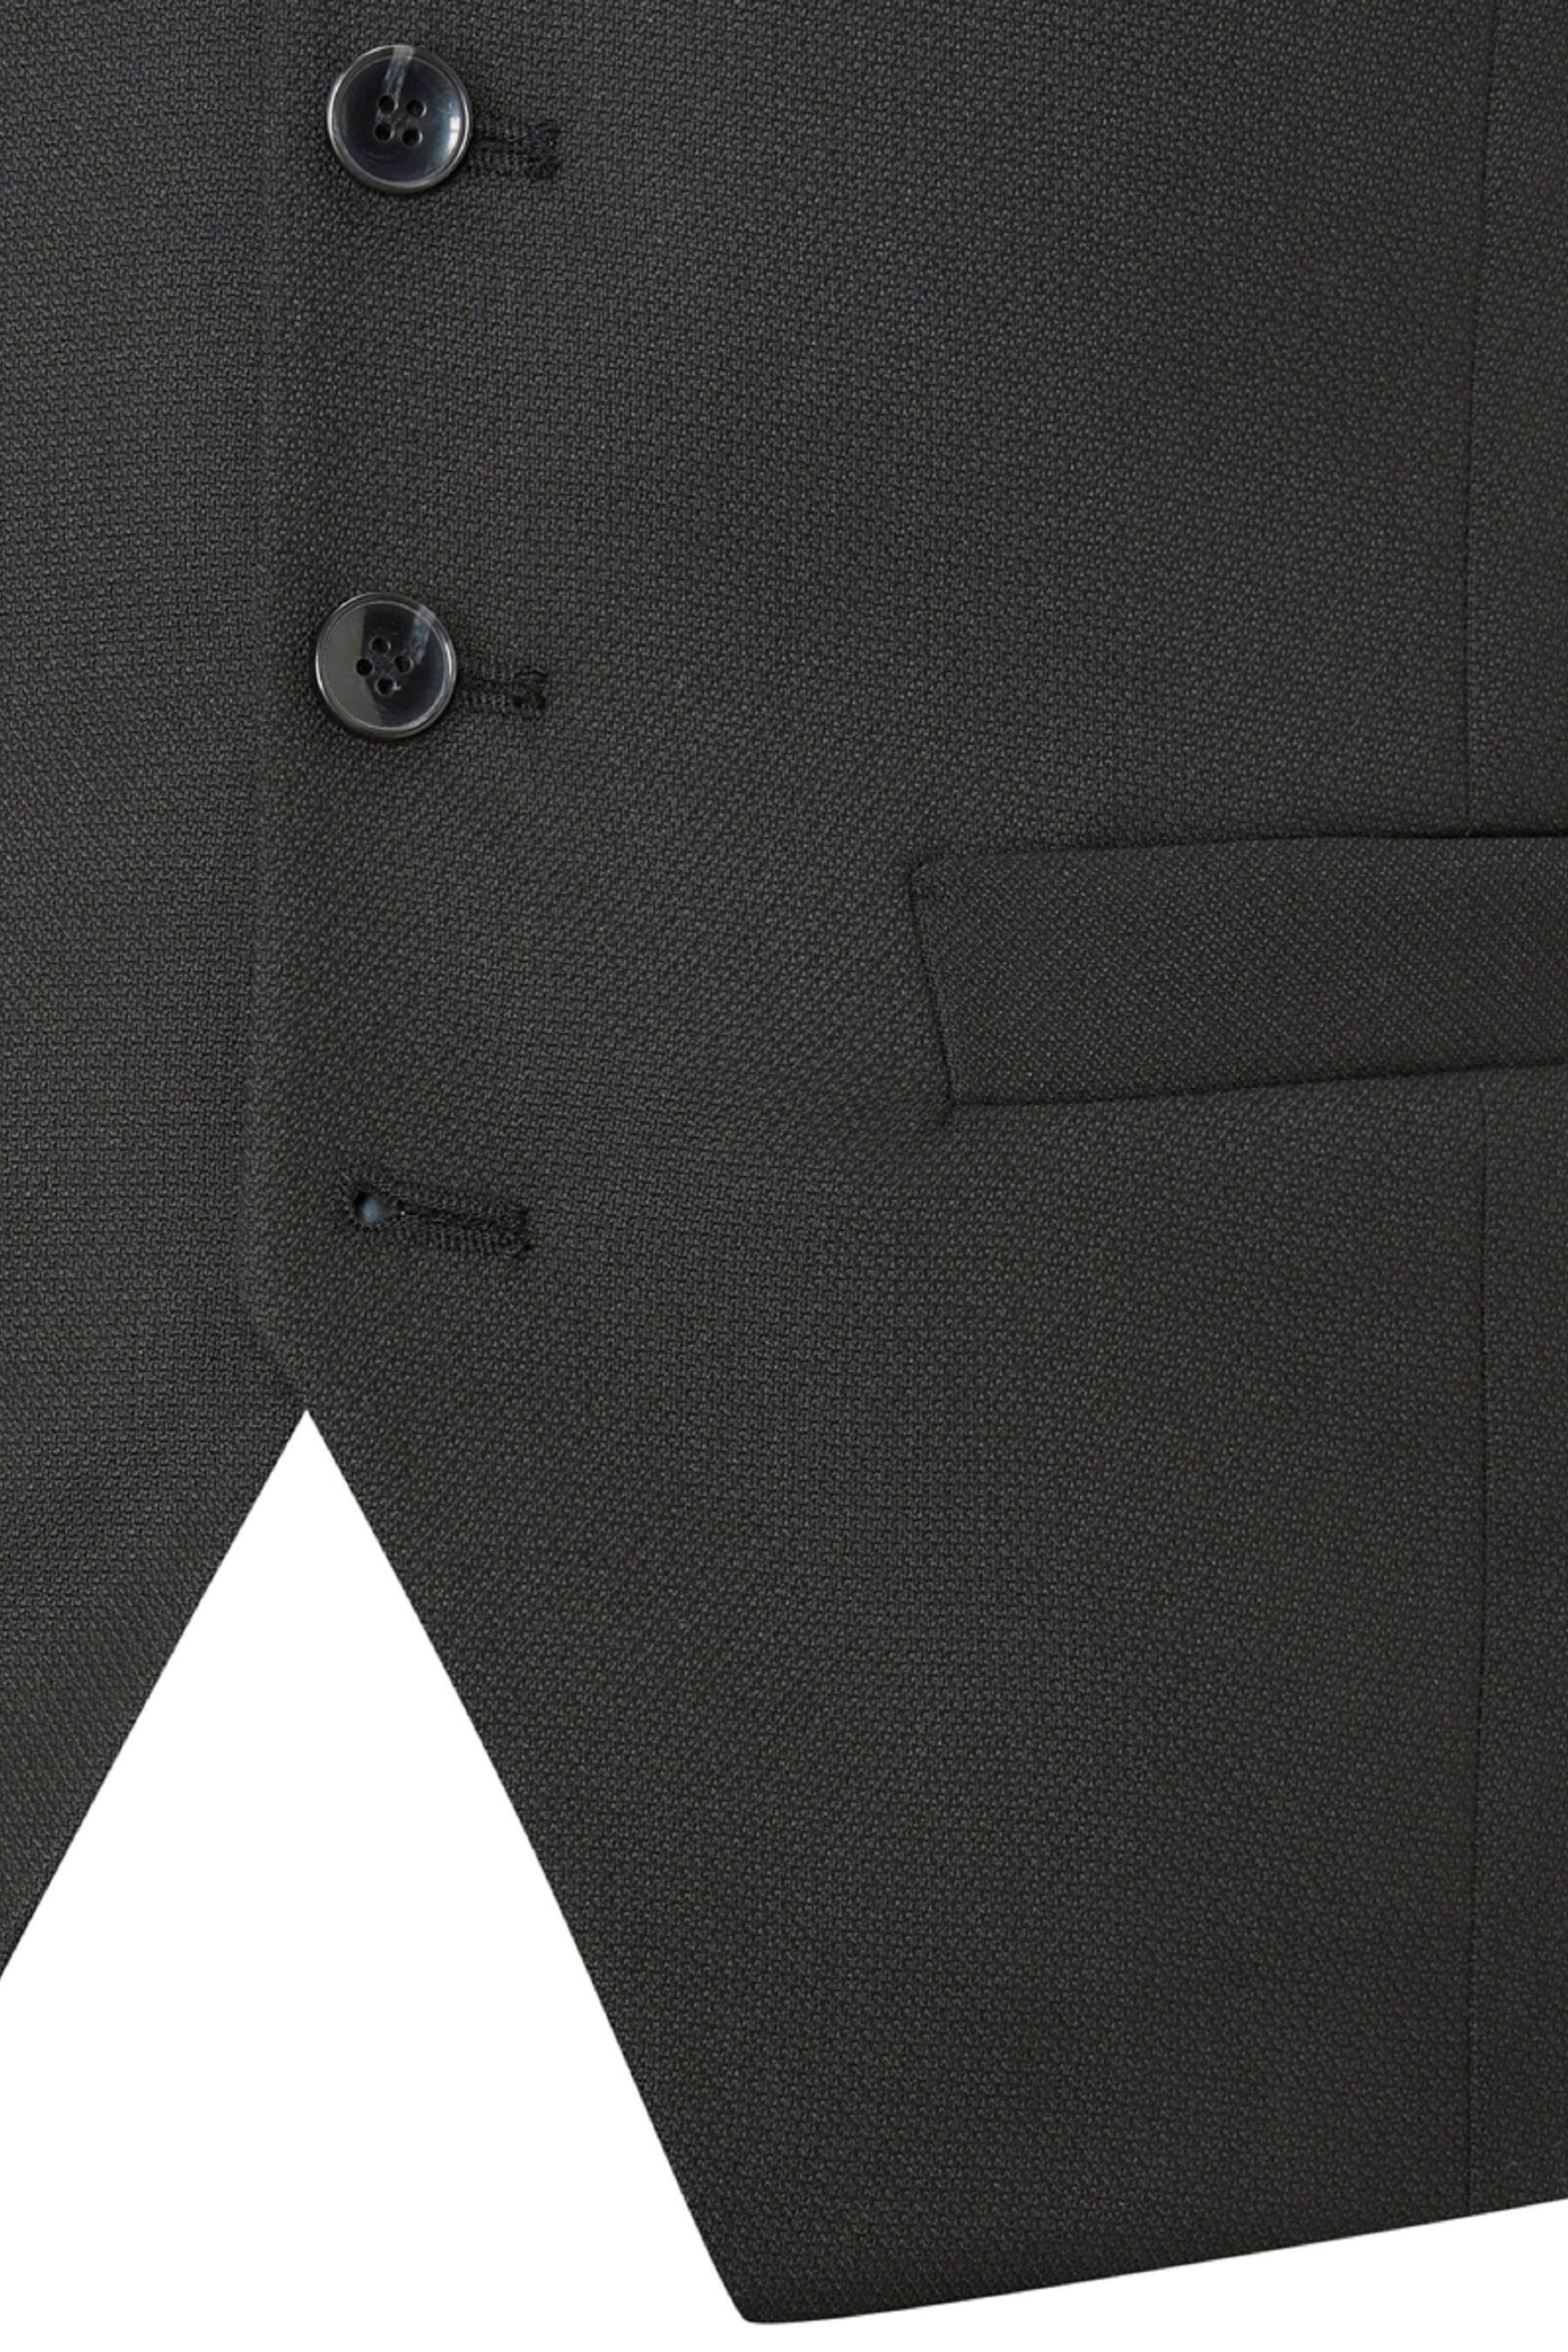 Skopes Black Montague Suit: Waistcoat - Image 6 of 6